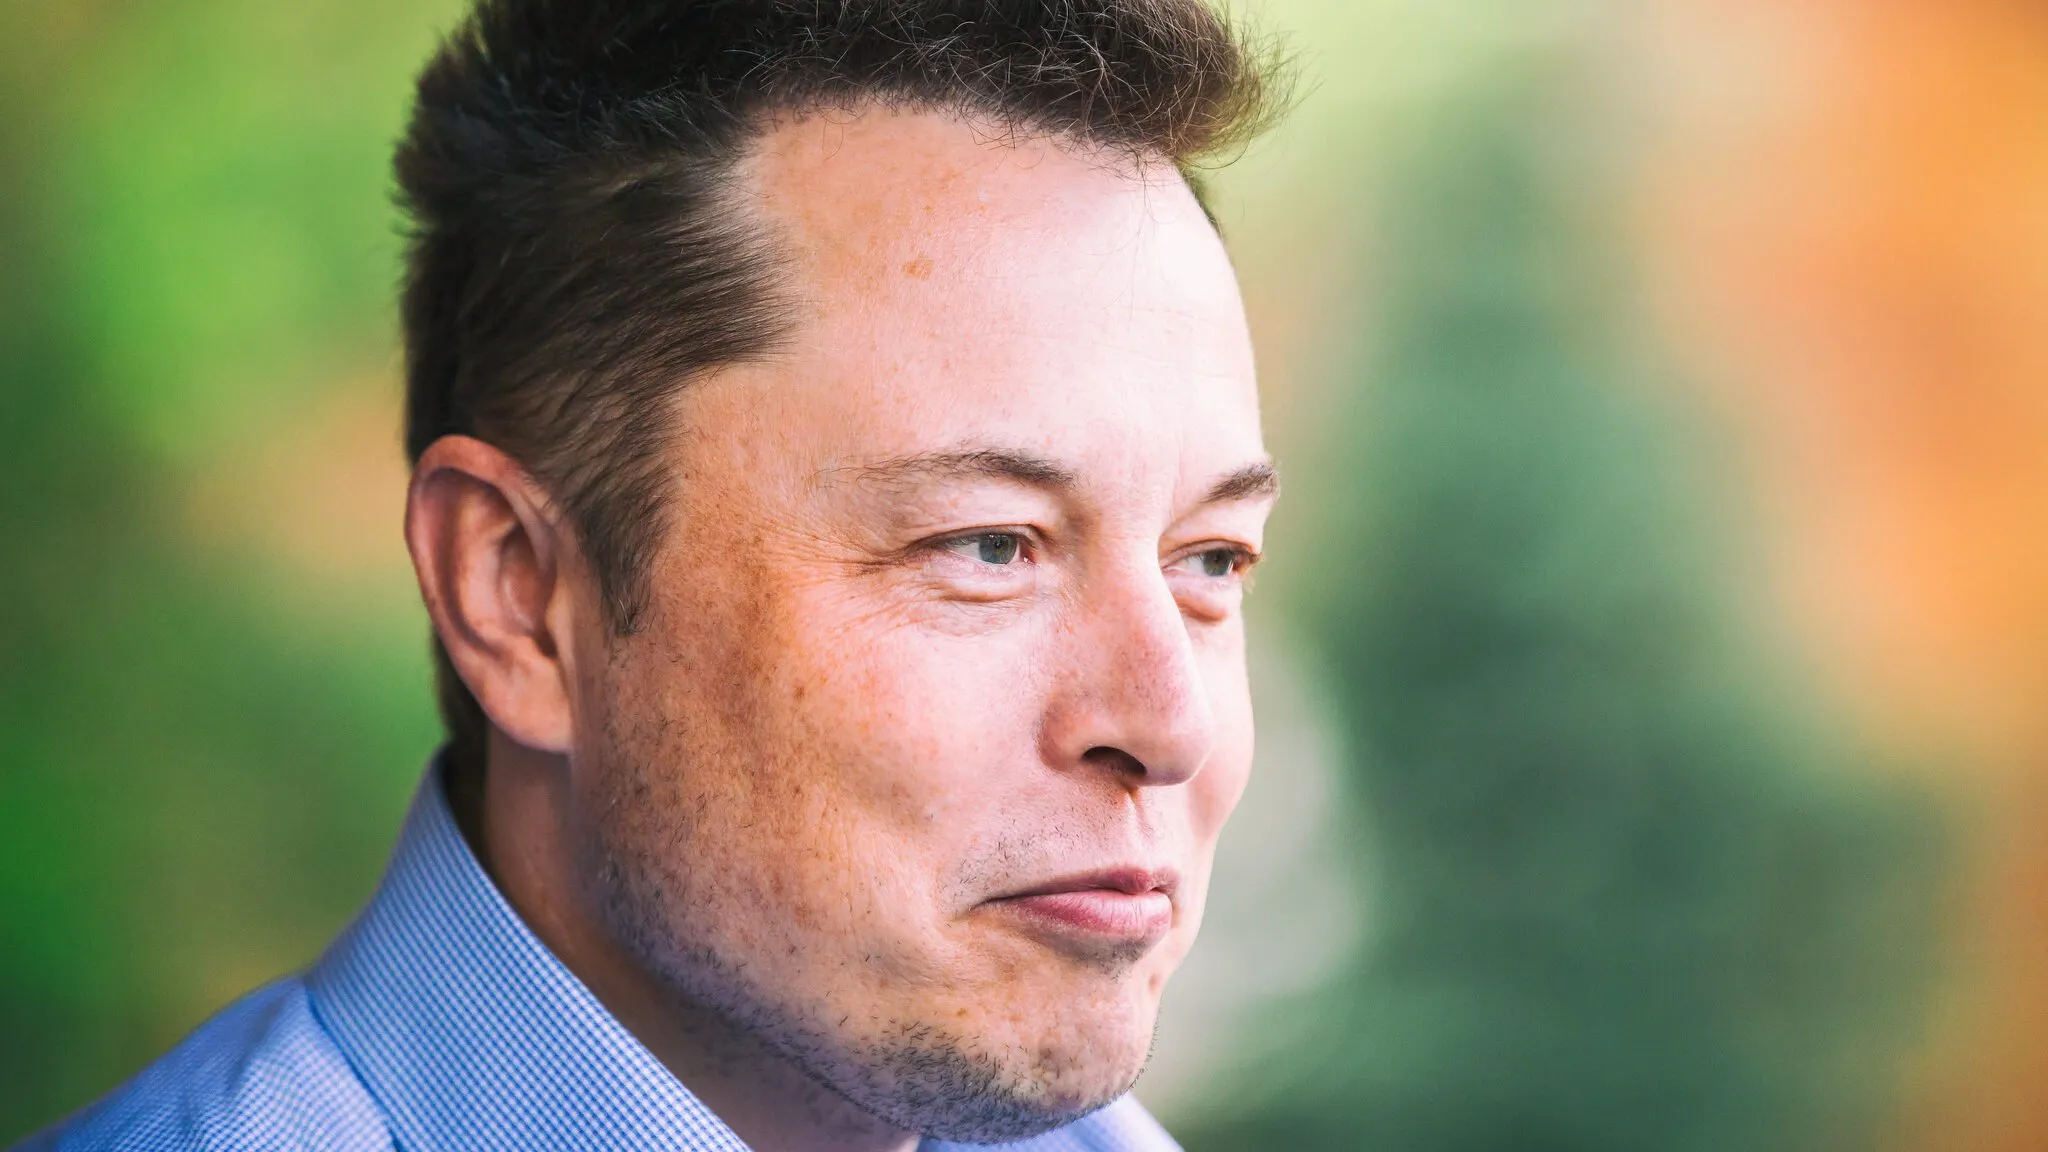 Elon Musk in 2015. Image: Shutterstock